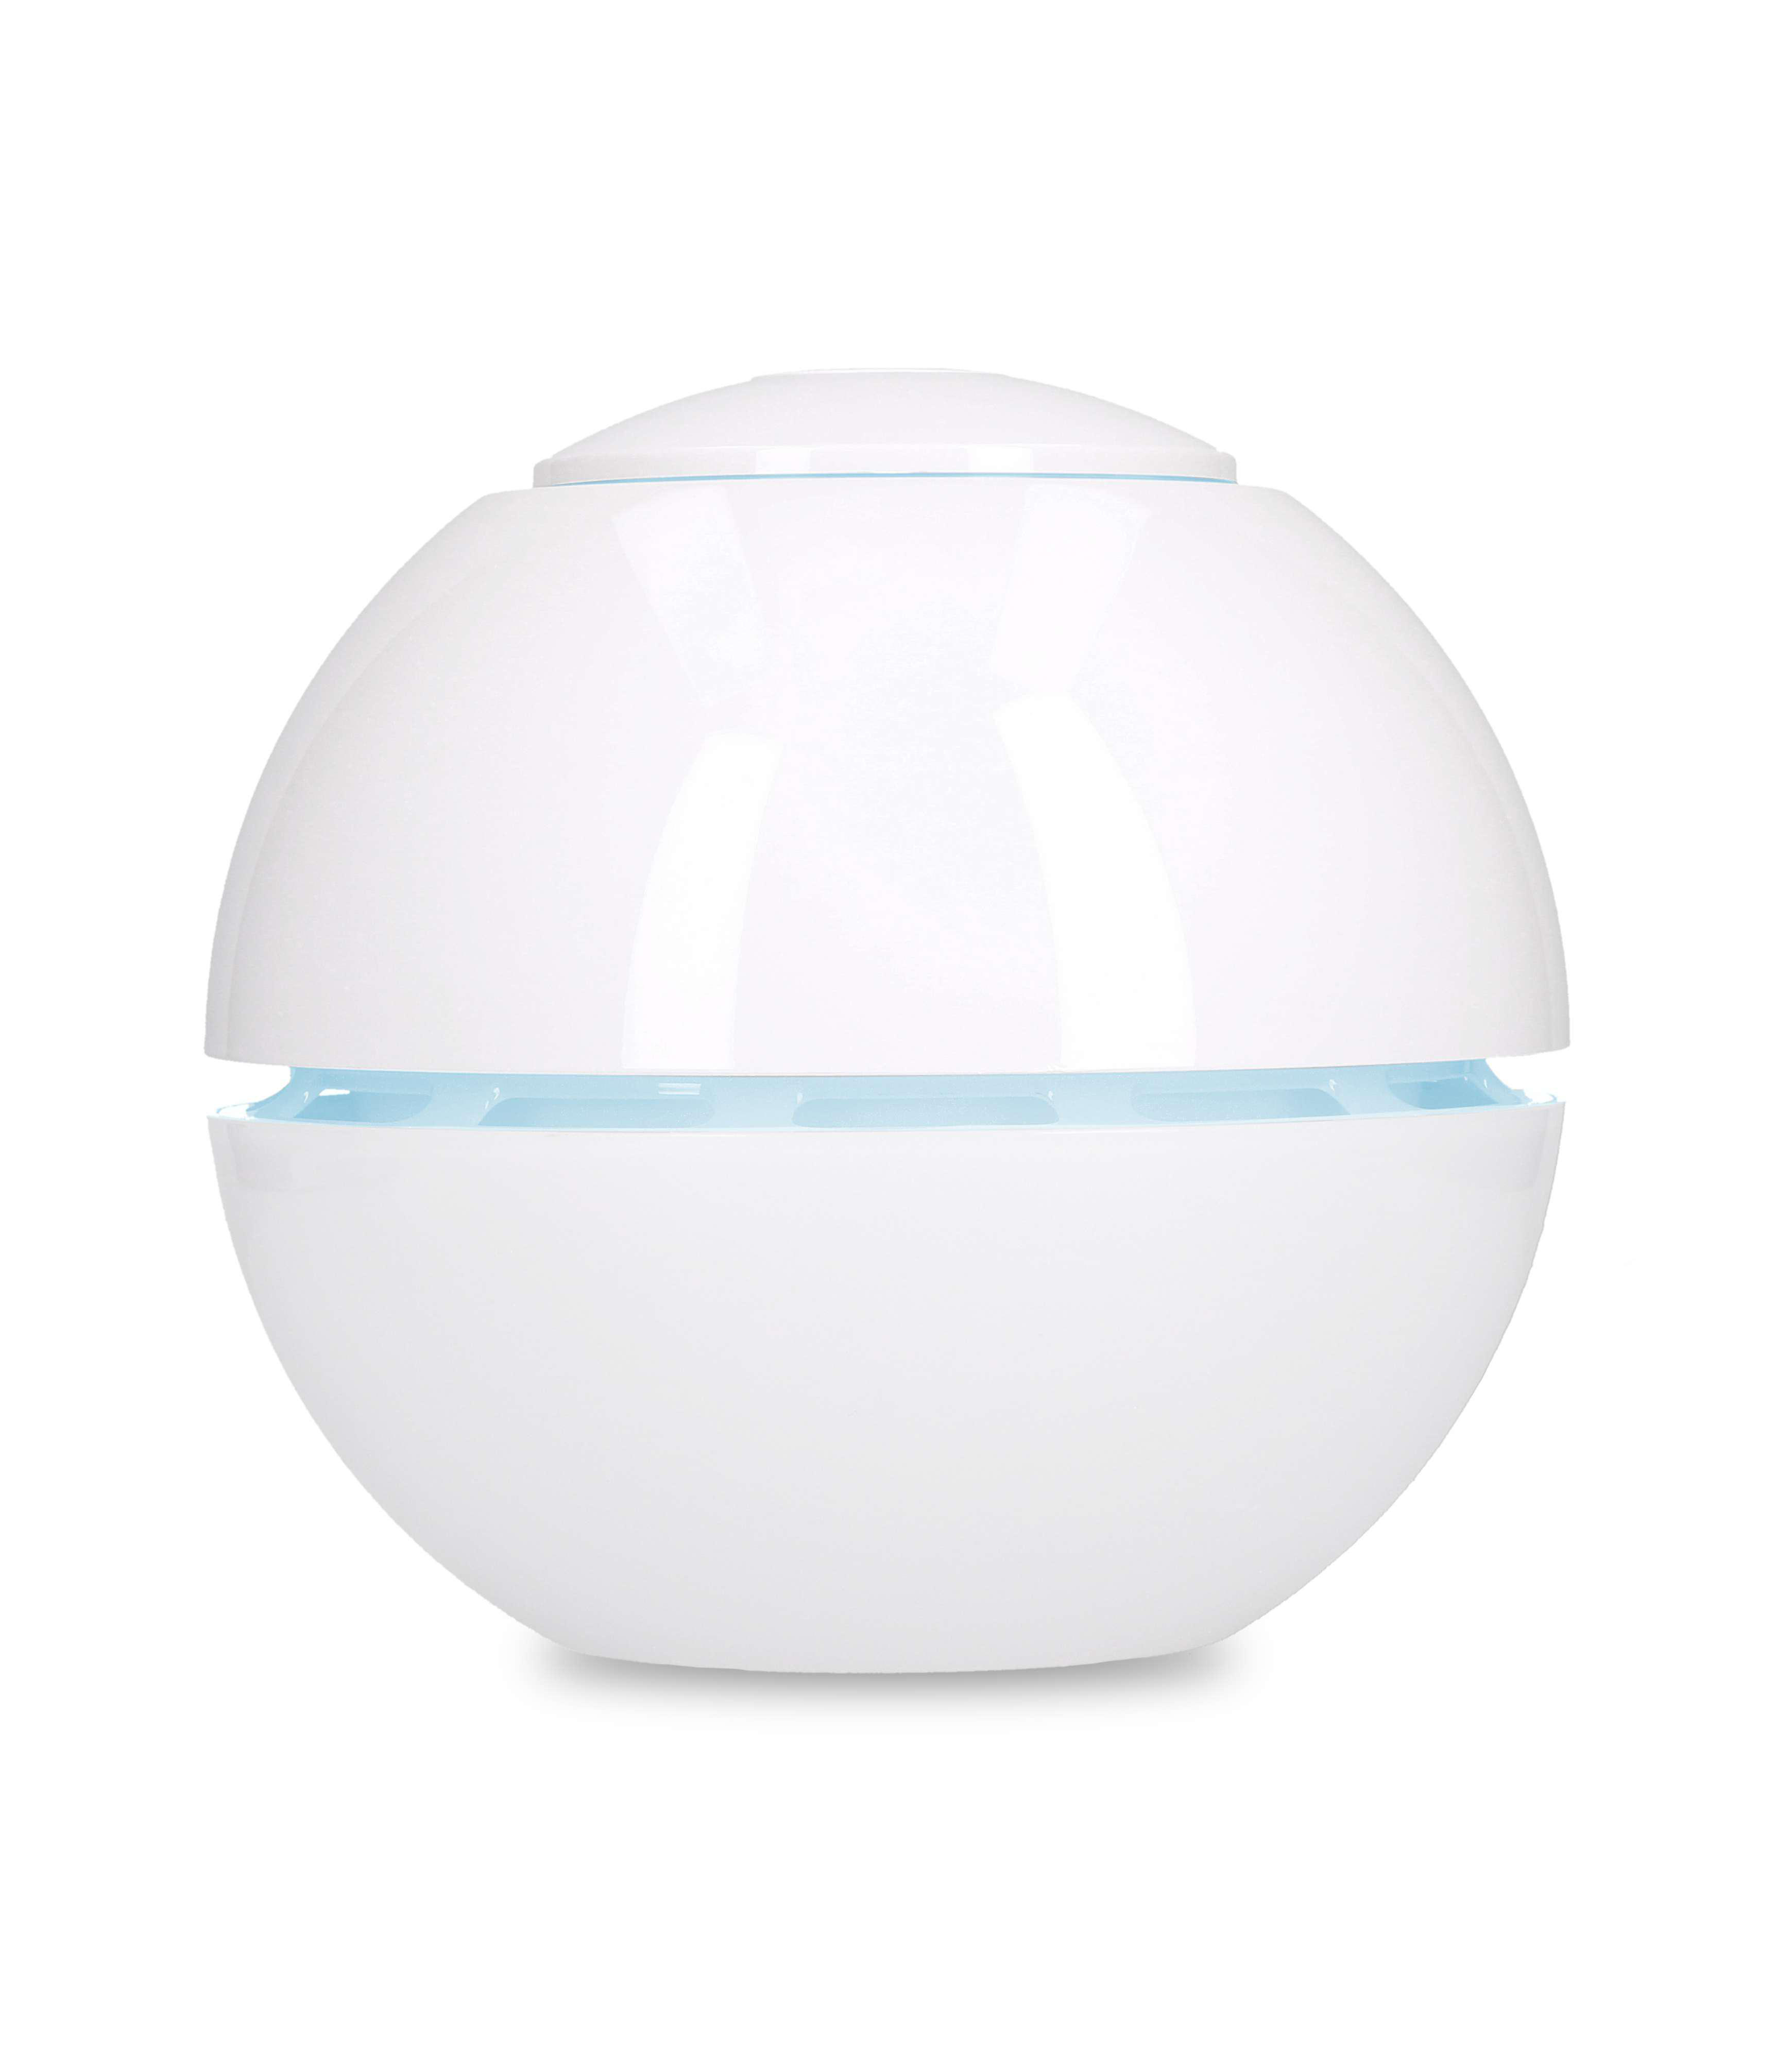 DUUX DXUH04 Sphere (15 15 m²) Raumgröße: Weiß Ultrasonic Watt, Luftbefeuchter